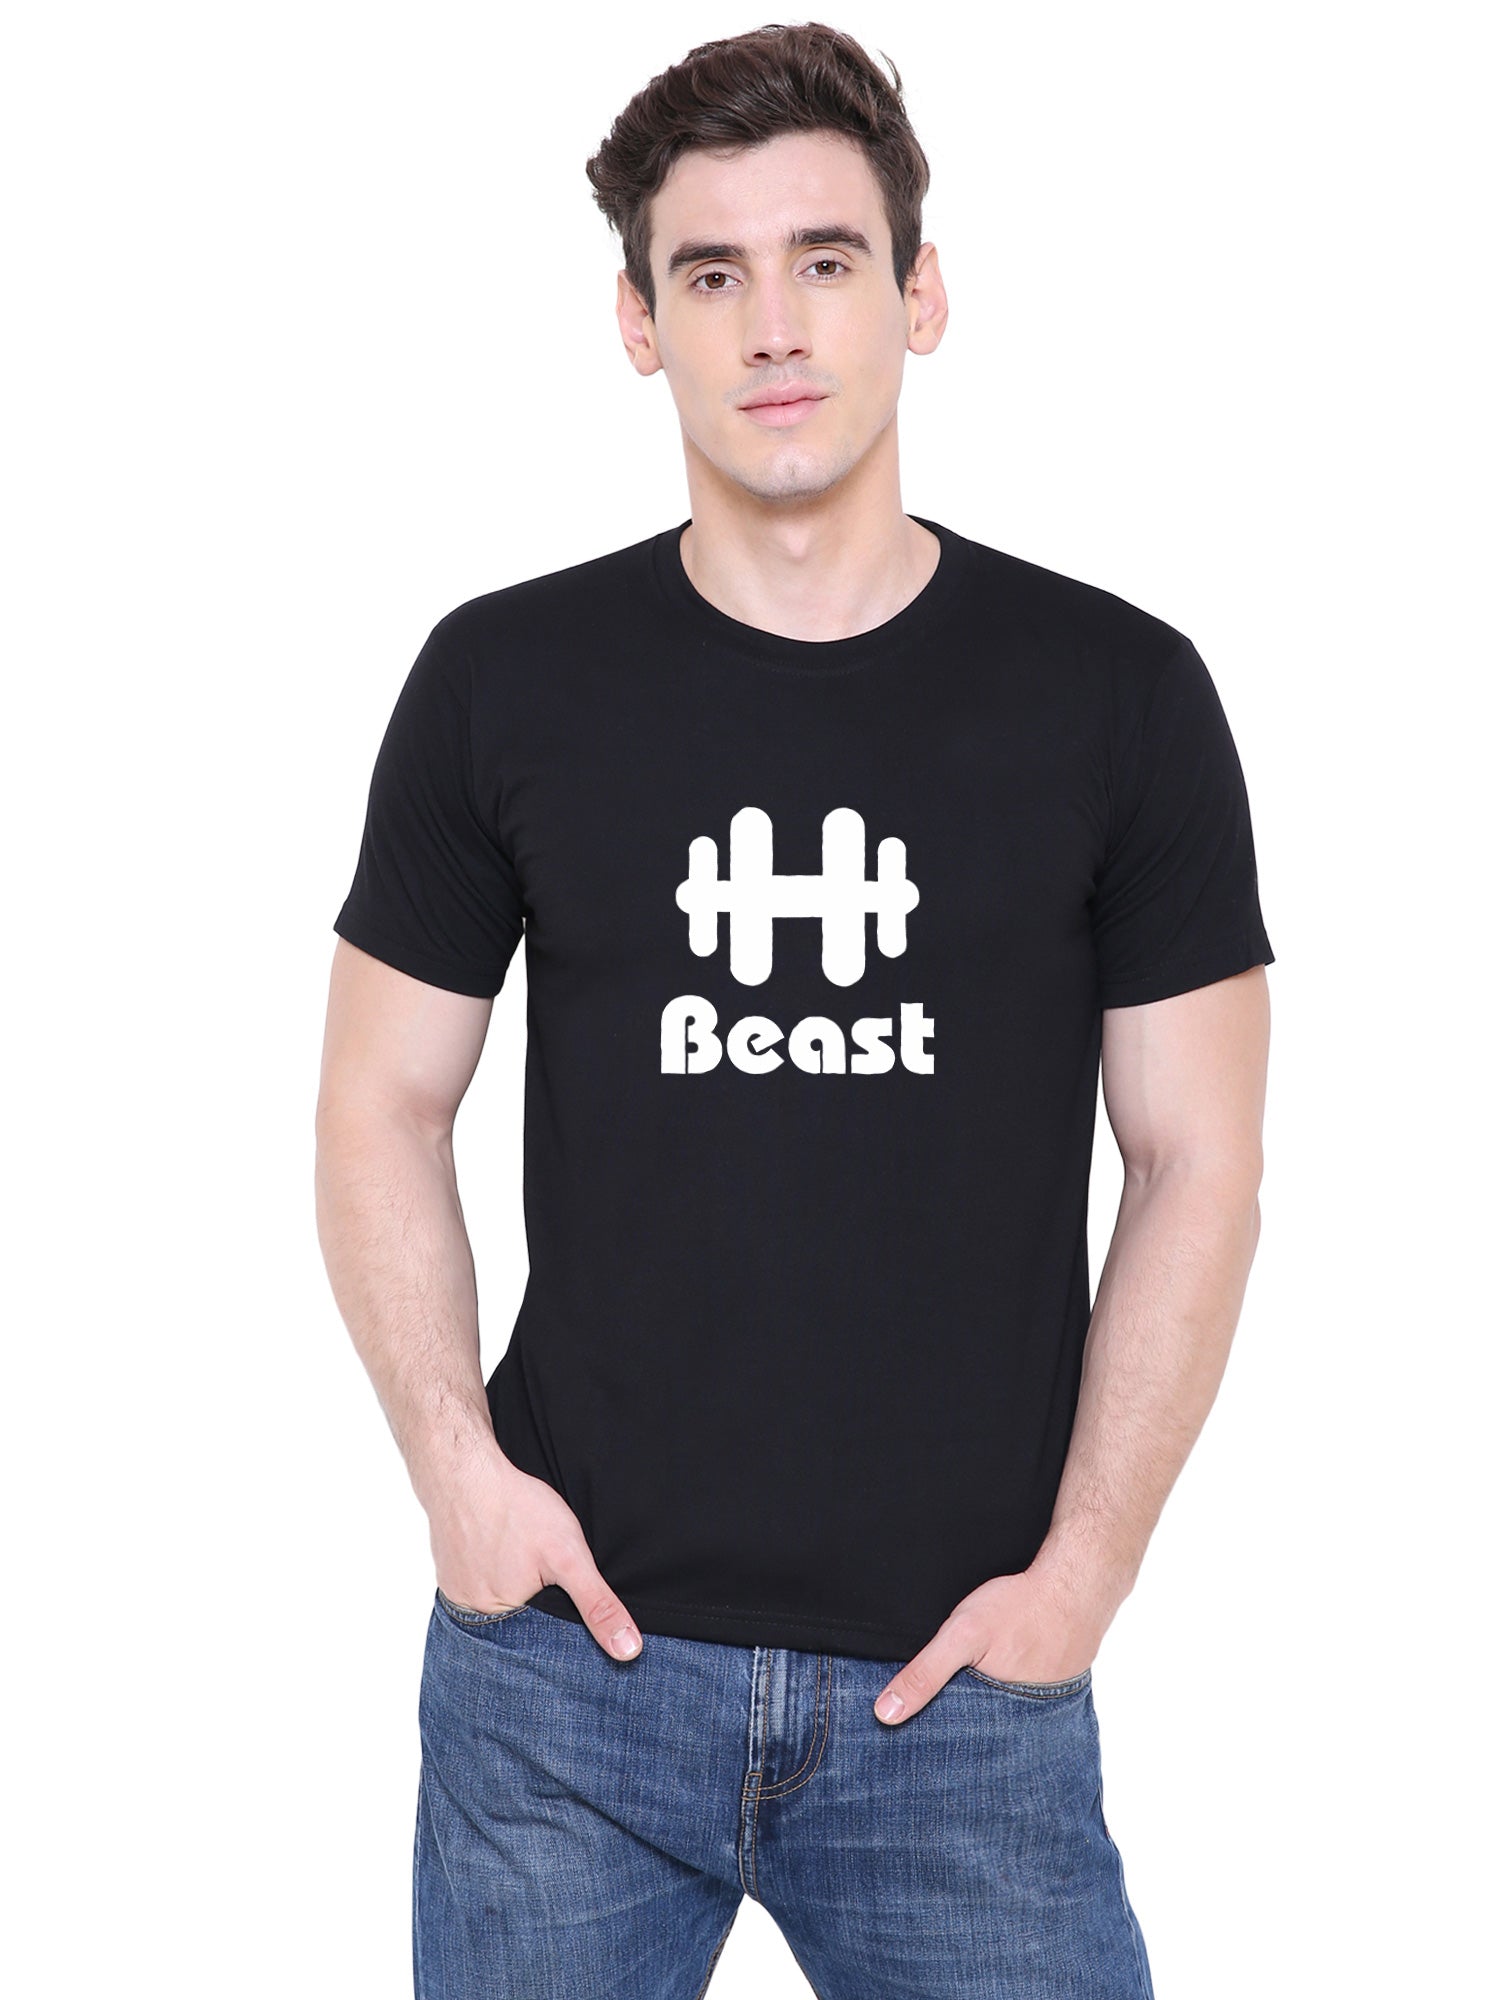 Beauty Beast matching Couple T shirts- Black